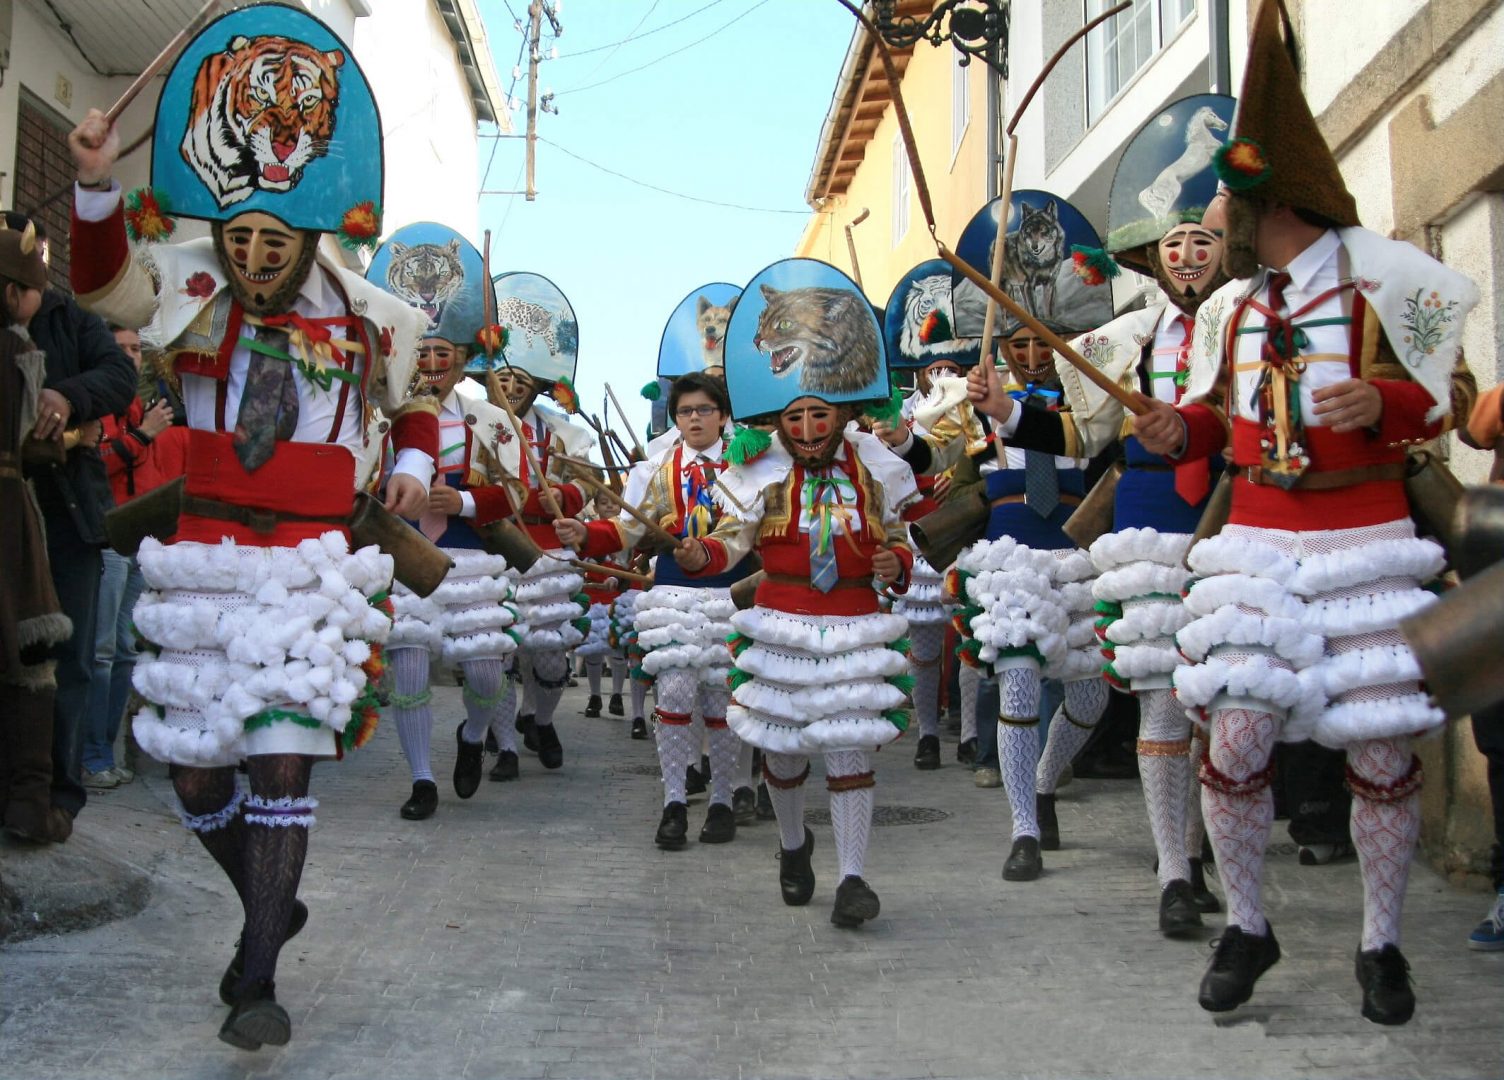 Los peliqueiros son los trajes característicos del carnaval de Laza (Ourense).